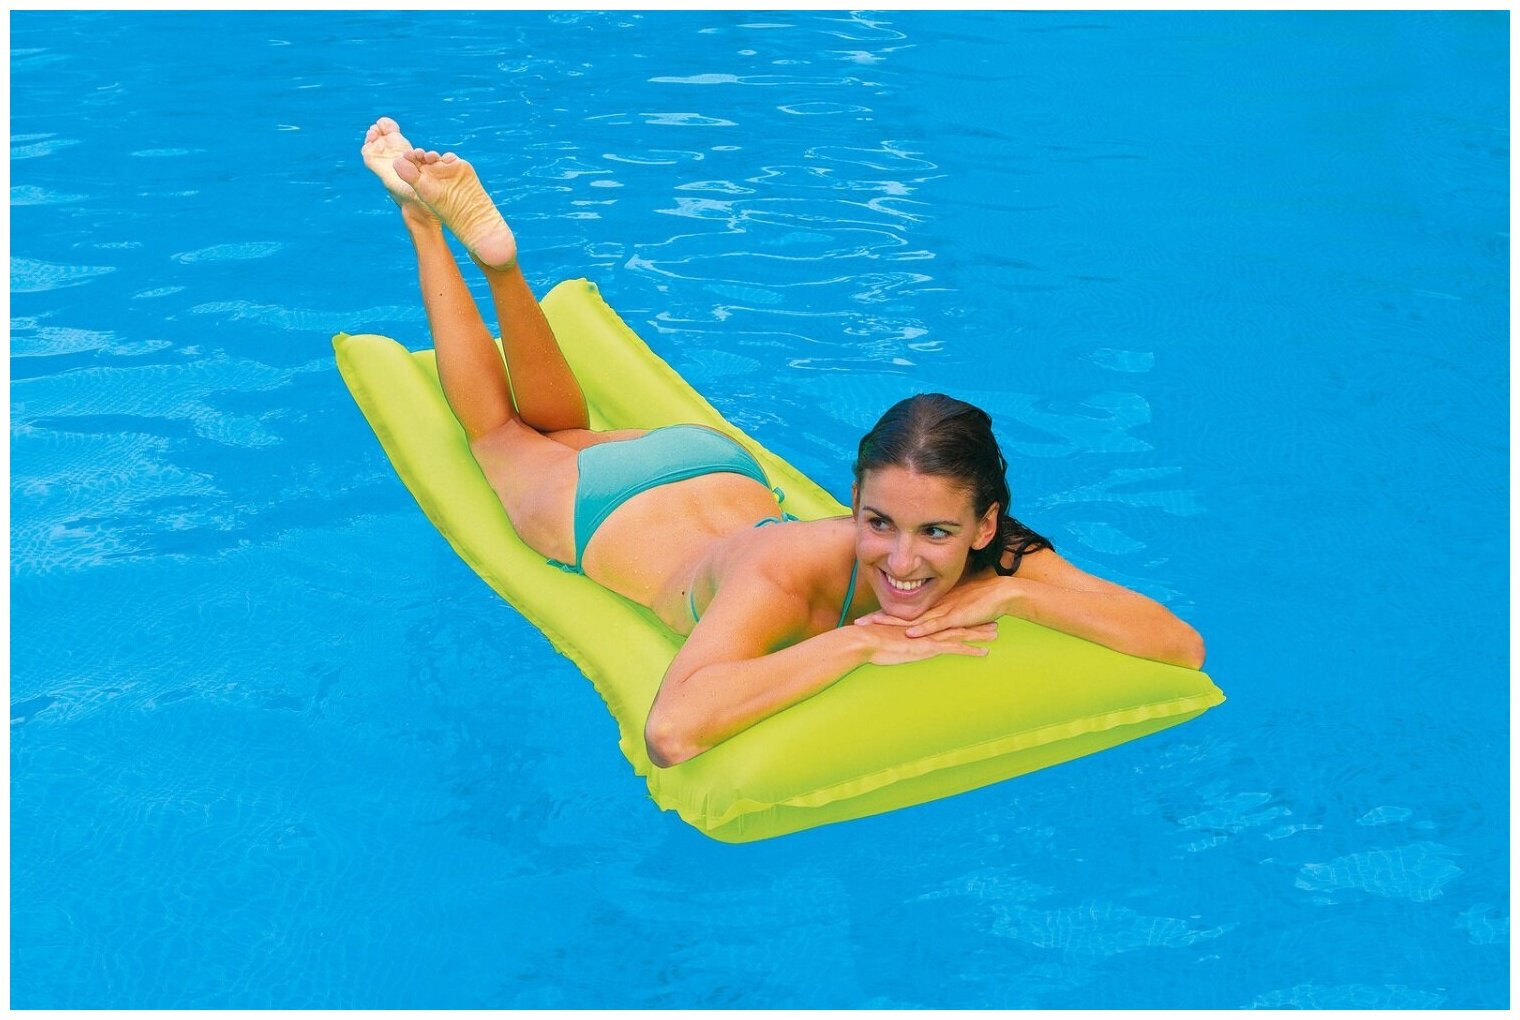 Надувной матрас для плавания Neon Frost Air Mats 183х76 см, одноместный, желтый матовый, до 100 кг, от 8 лет, без насоса, Intex 59717